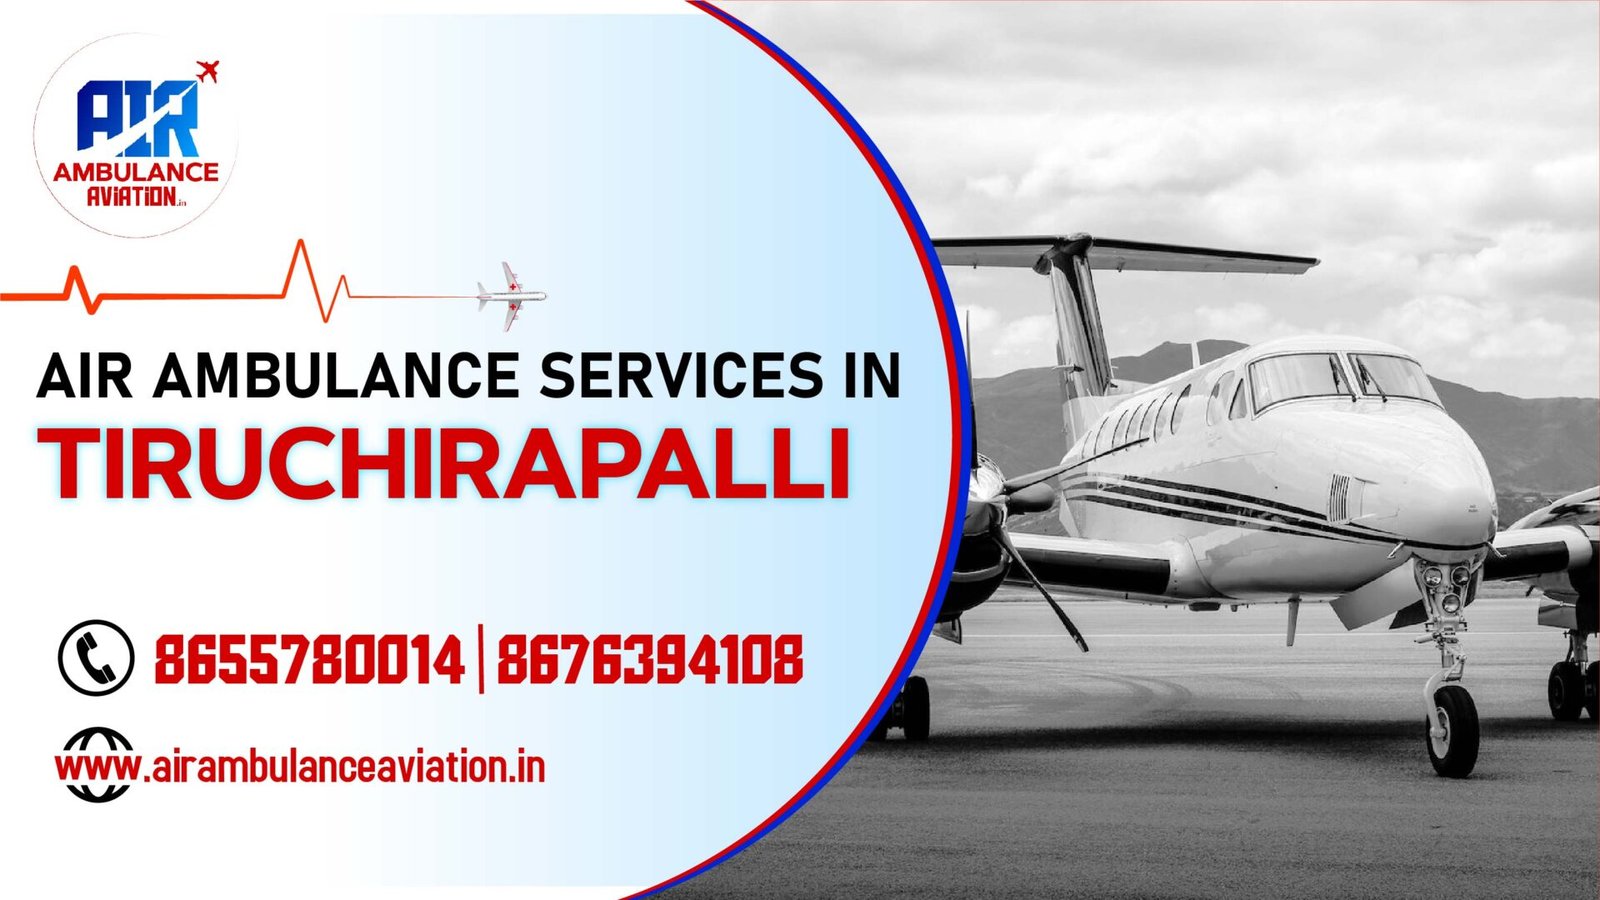 Air Ambulance Services in Tiruchirapalli